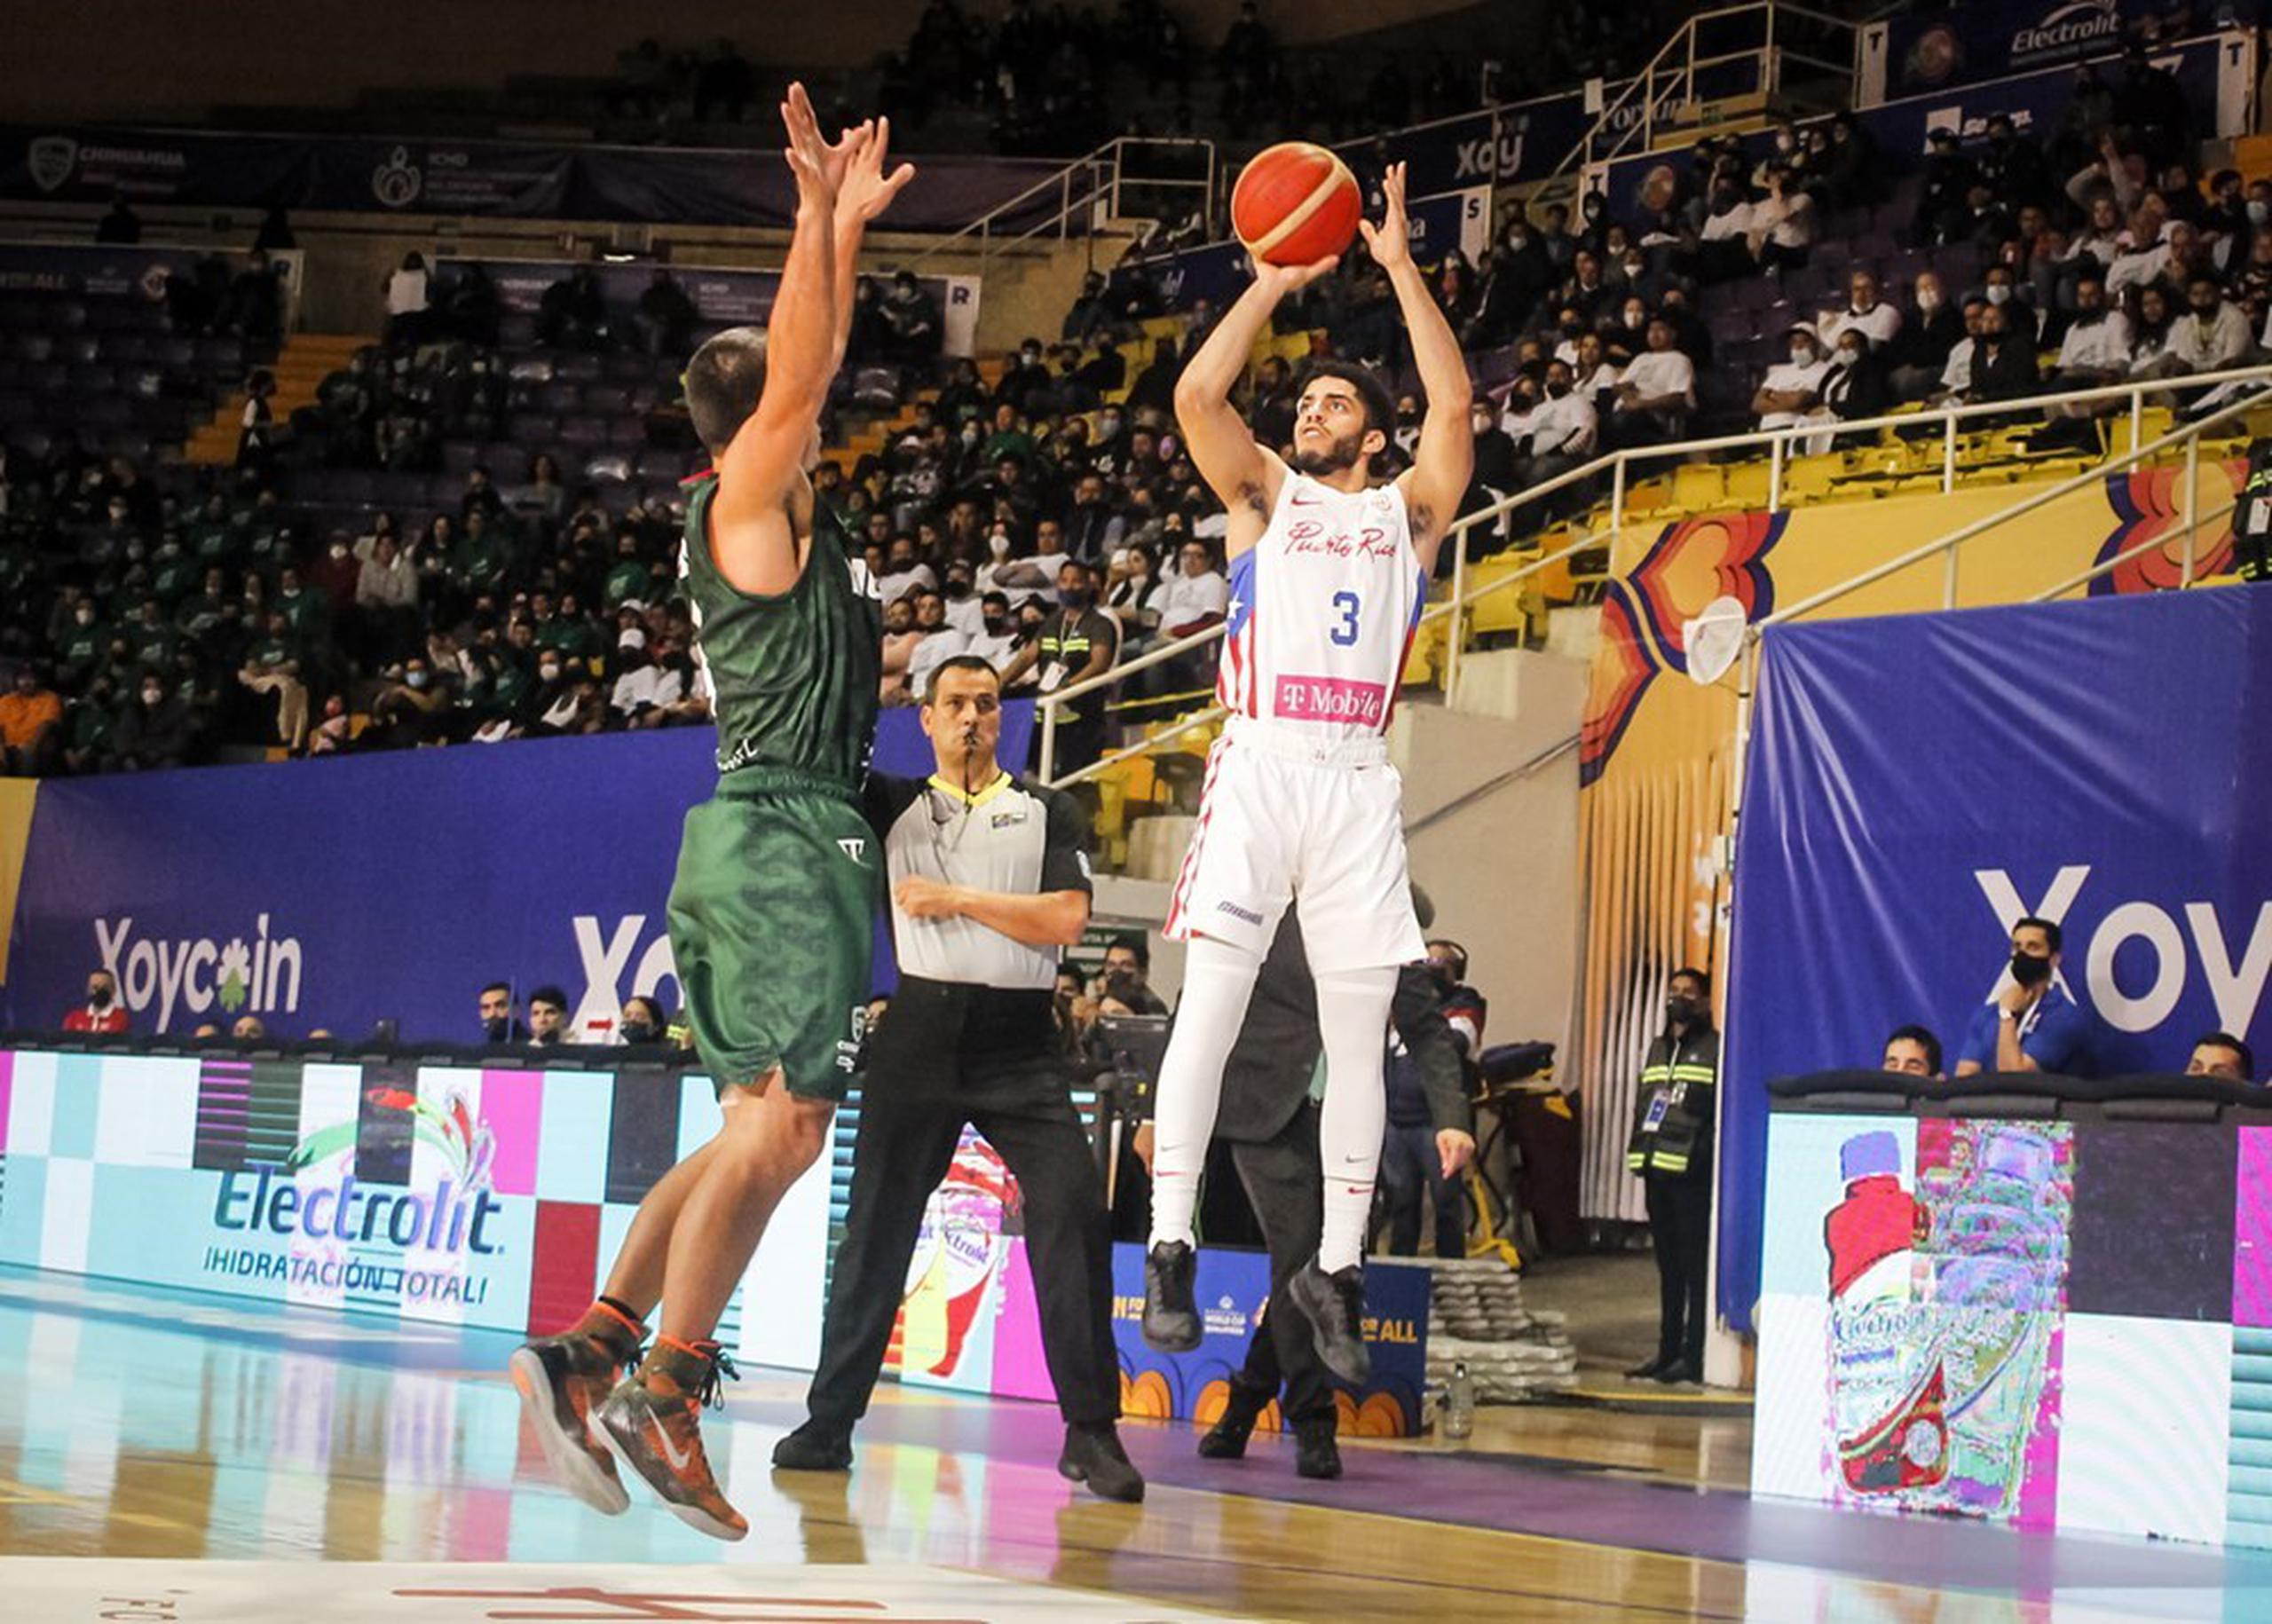 La integración de Jordan Howard al seleccionado nacional de baloncesto para la ventana en Brasil le da al equipo una versatilidad que no tuvo en ventanas anteriores, según el dirigente, Nelson Colón.